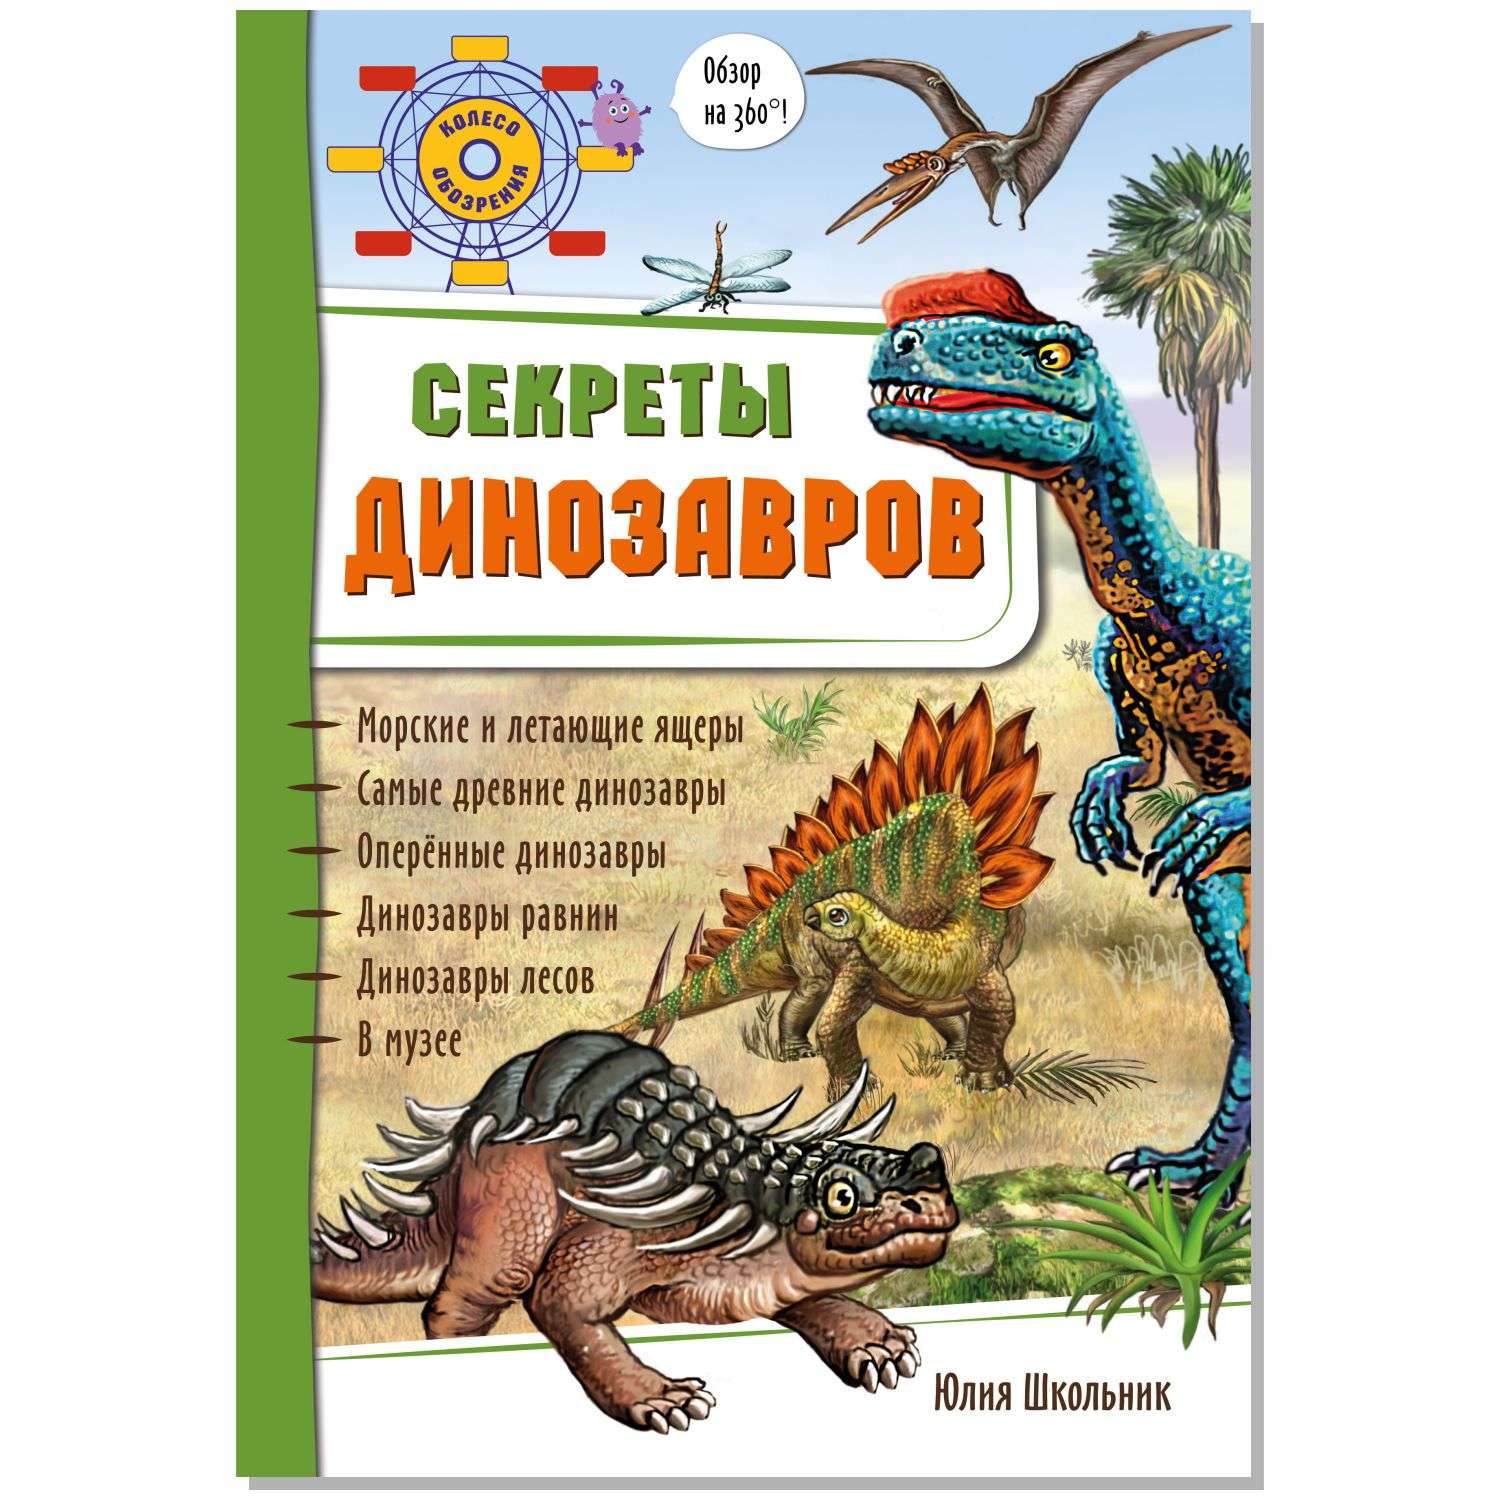 Книжки про динозавров. Книга про динозавров для детей. Детская книга про динозавров с картинками. Динозавр с подарком.